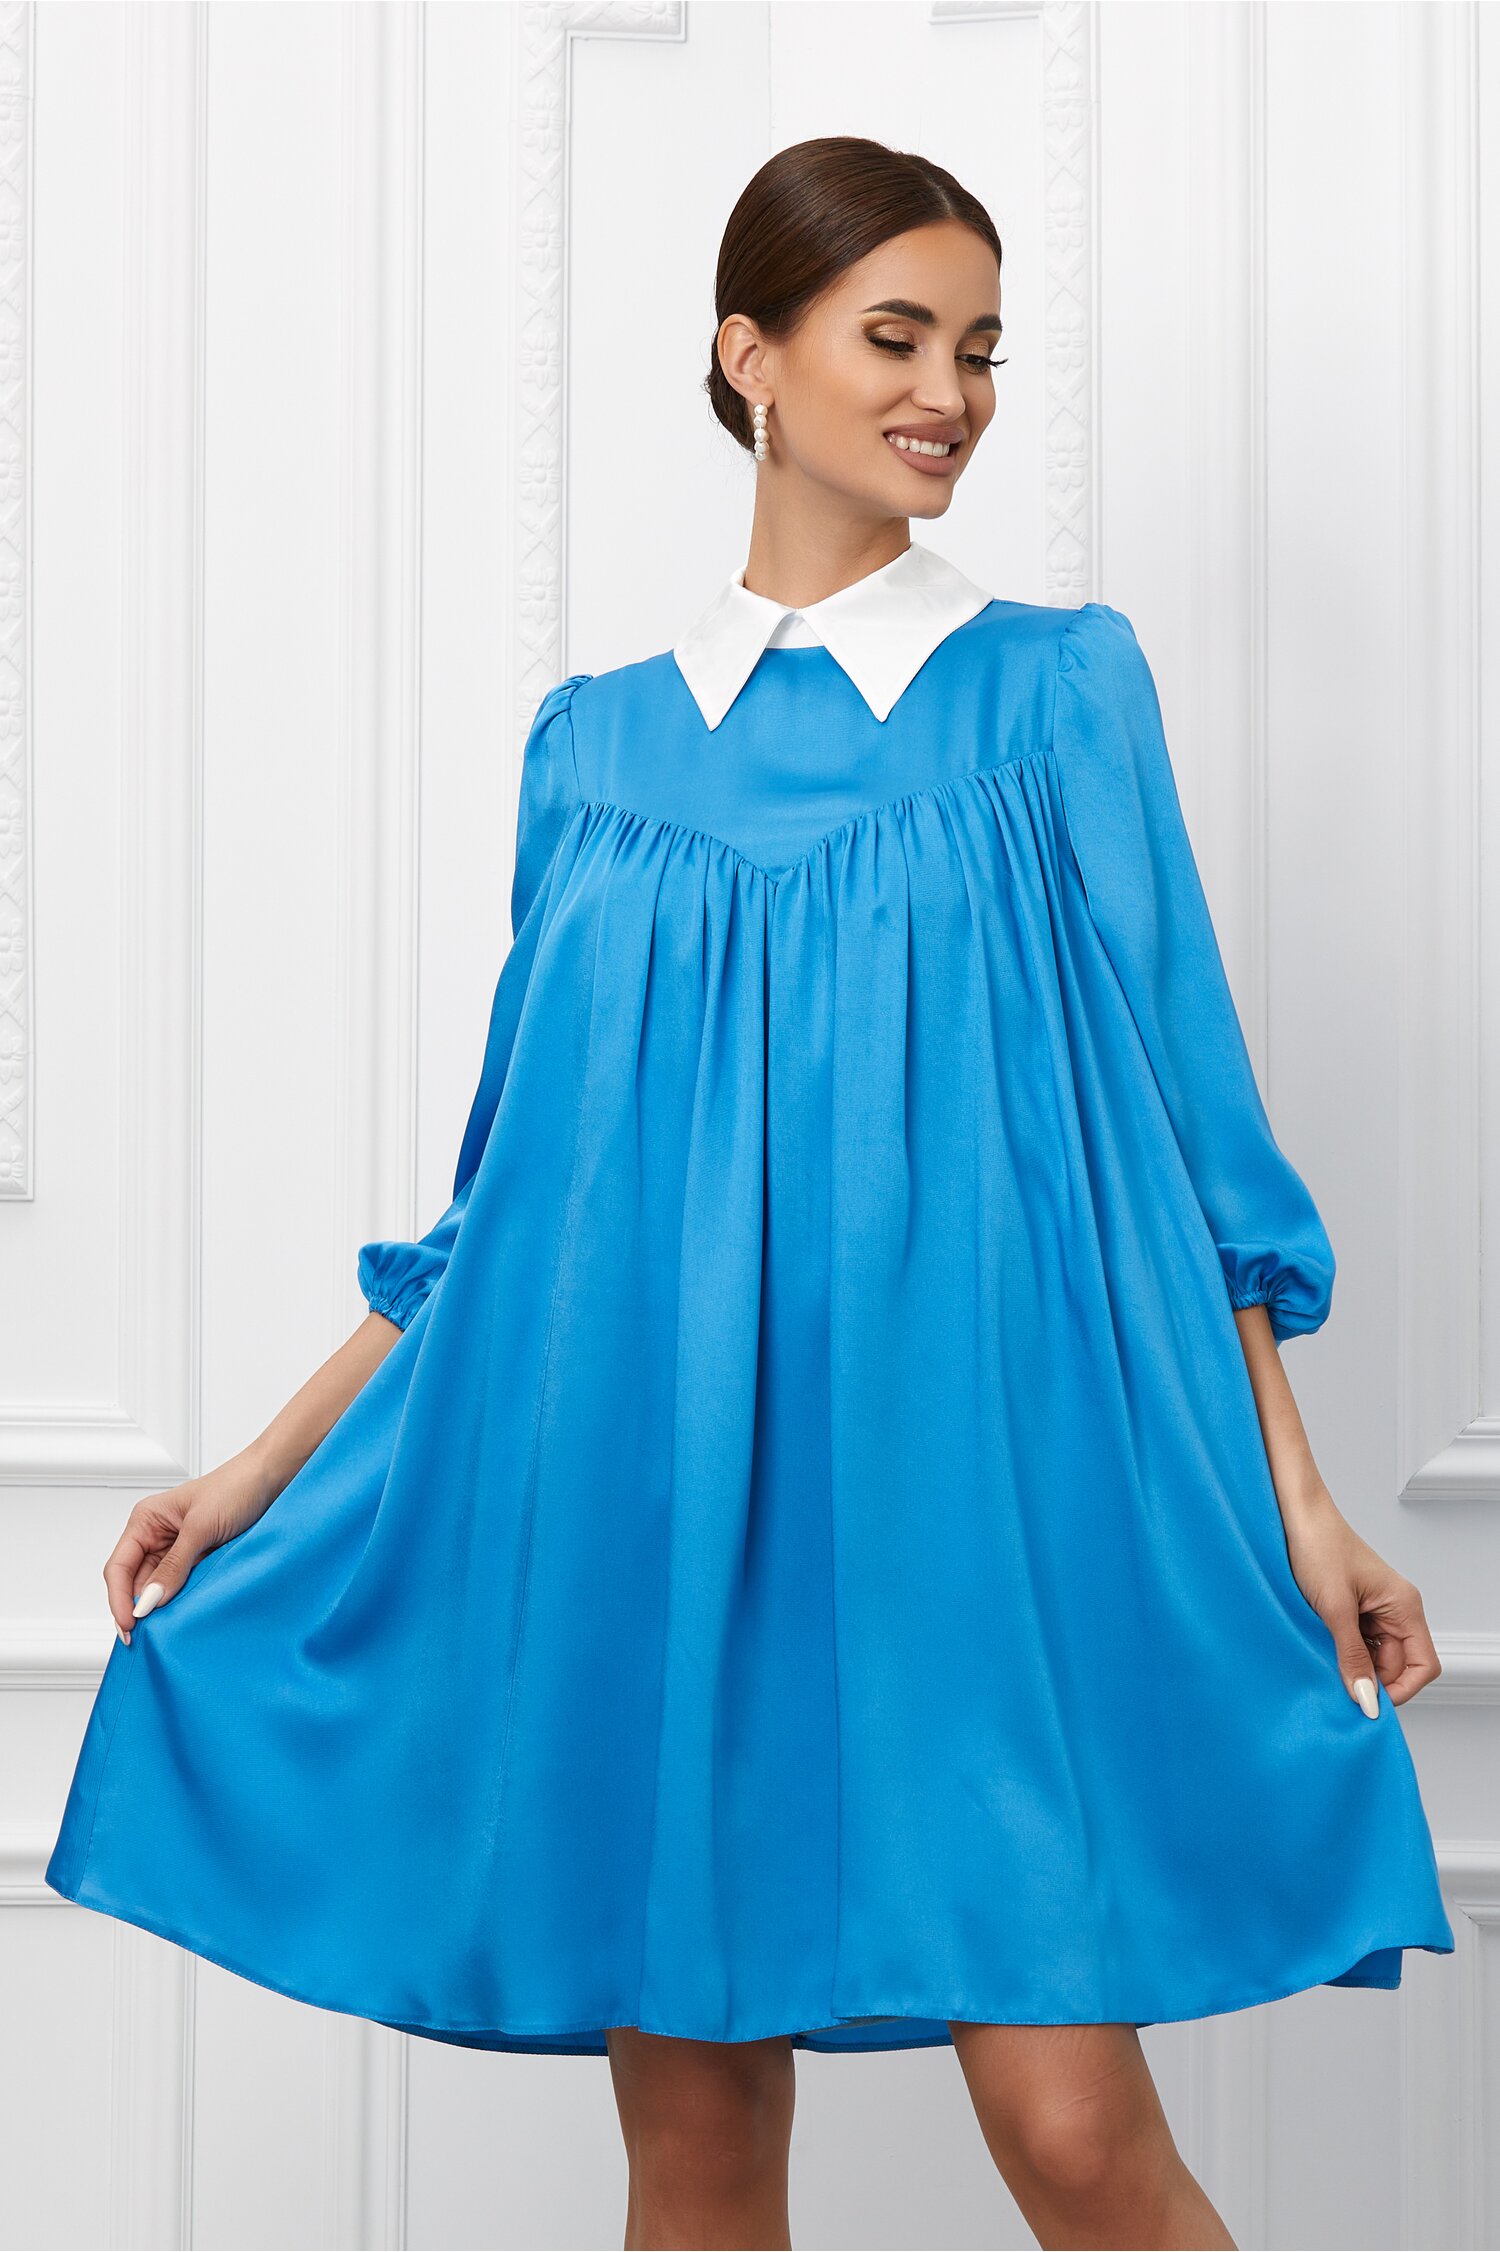 Rochie Dy Fashion albastra cu guler ascutit 2023 ❤️ Pret Super dyfashion imagine noua 2022